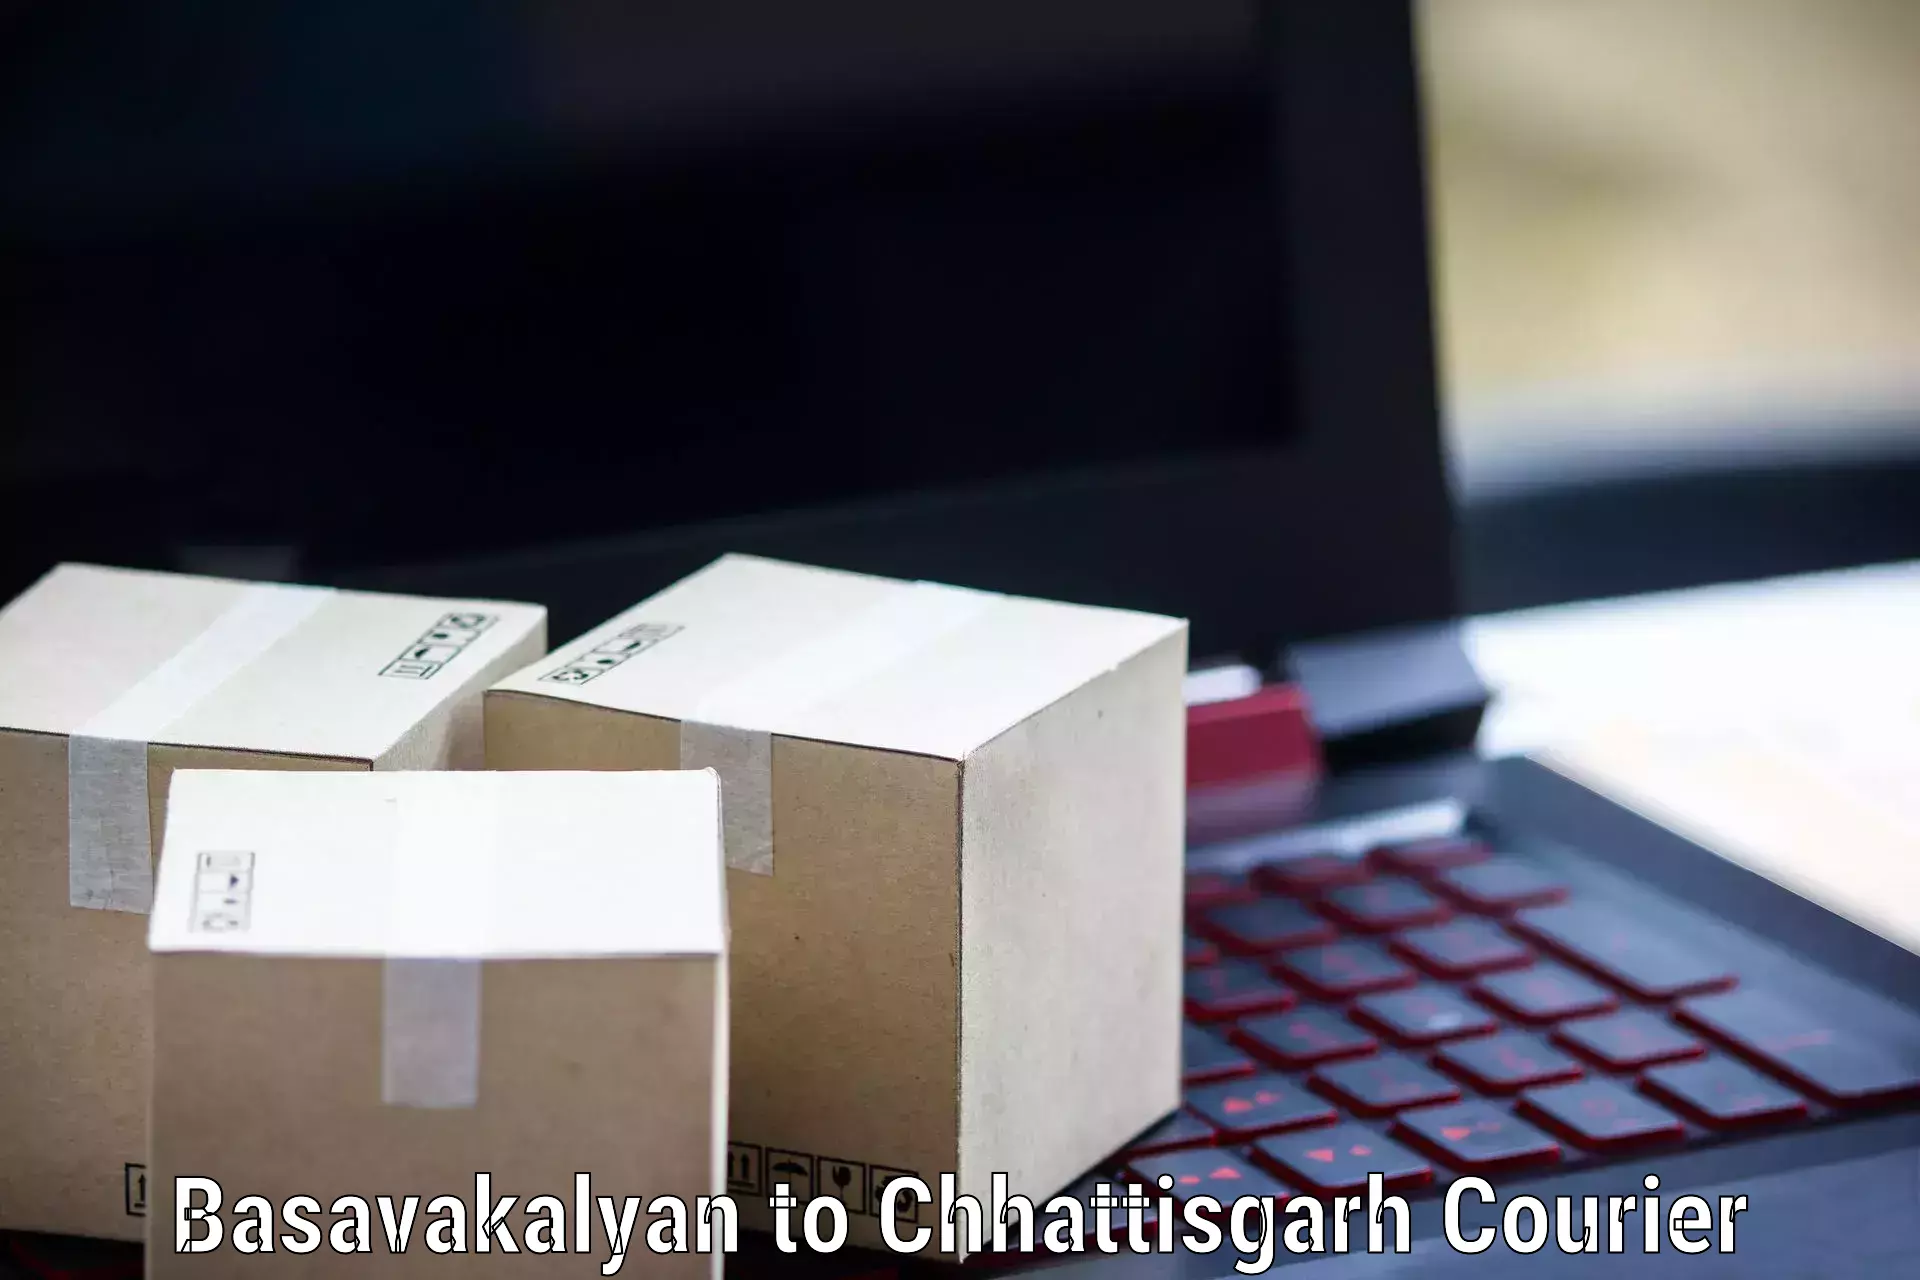 Nationwide parcel services Basavakalyan to Kusmi